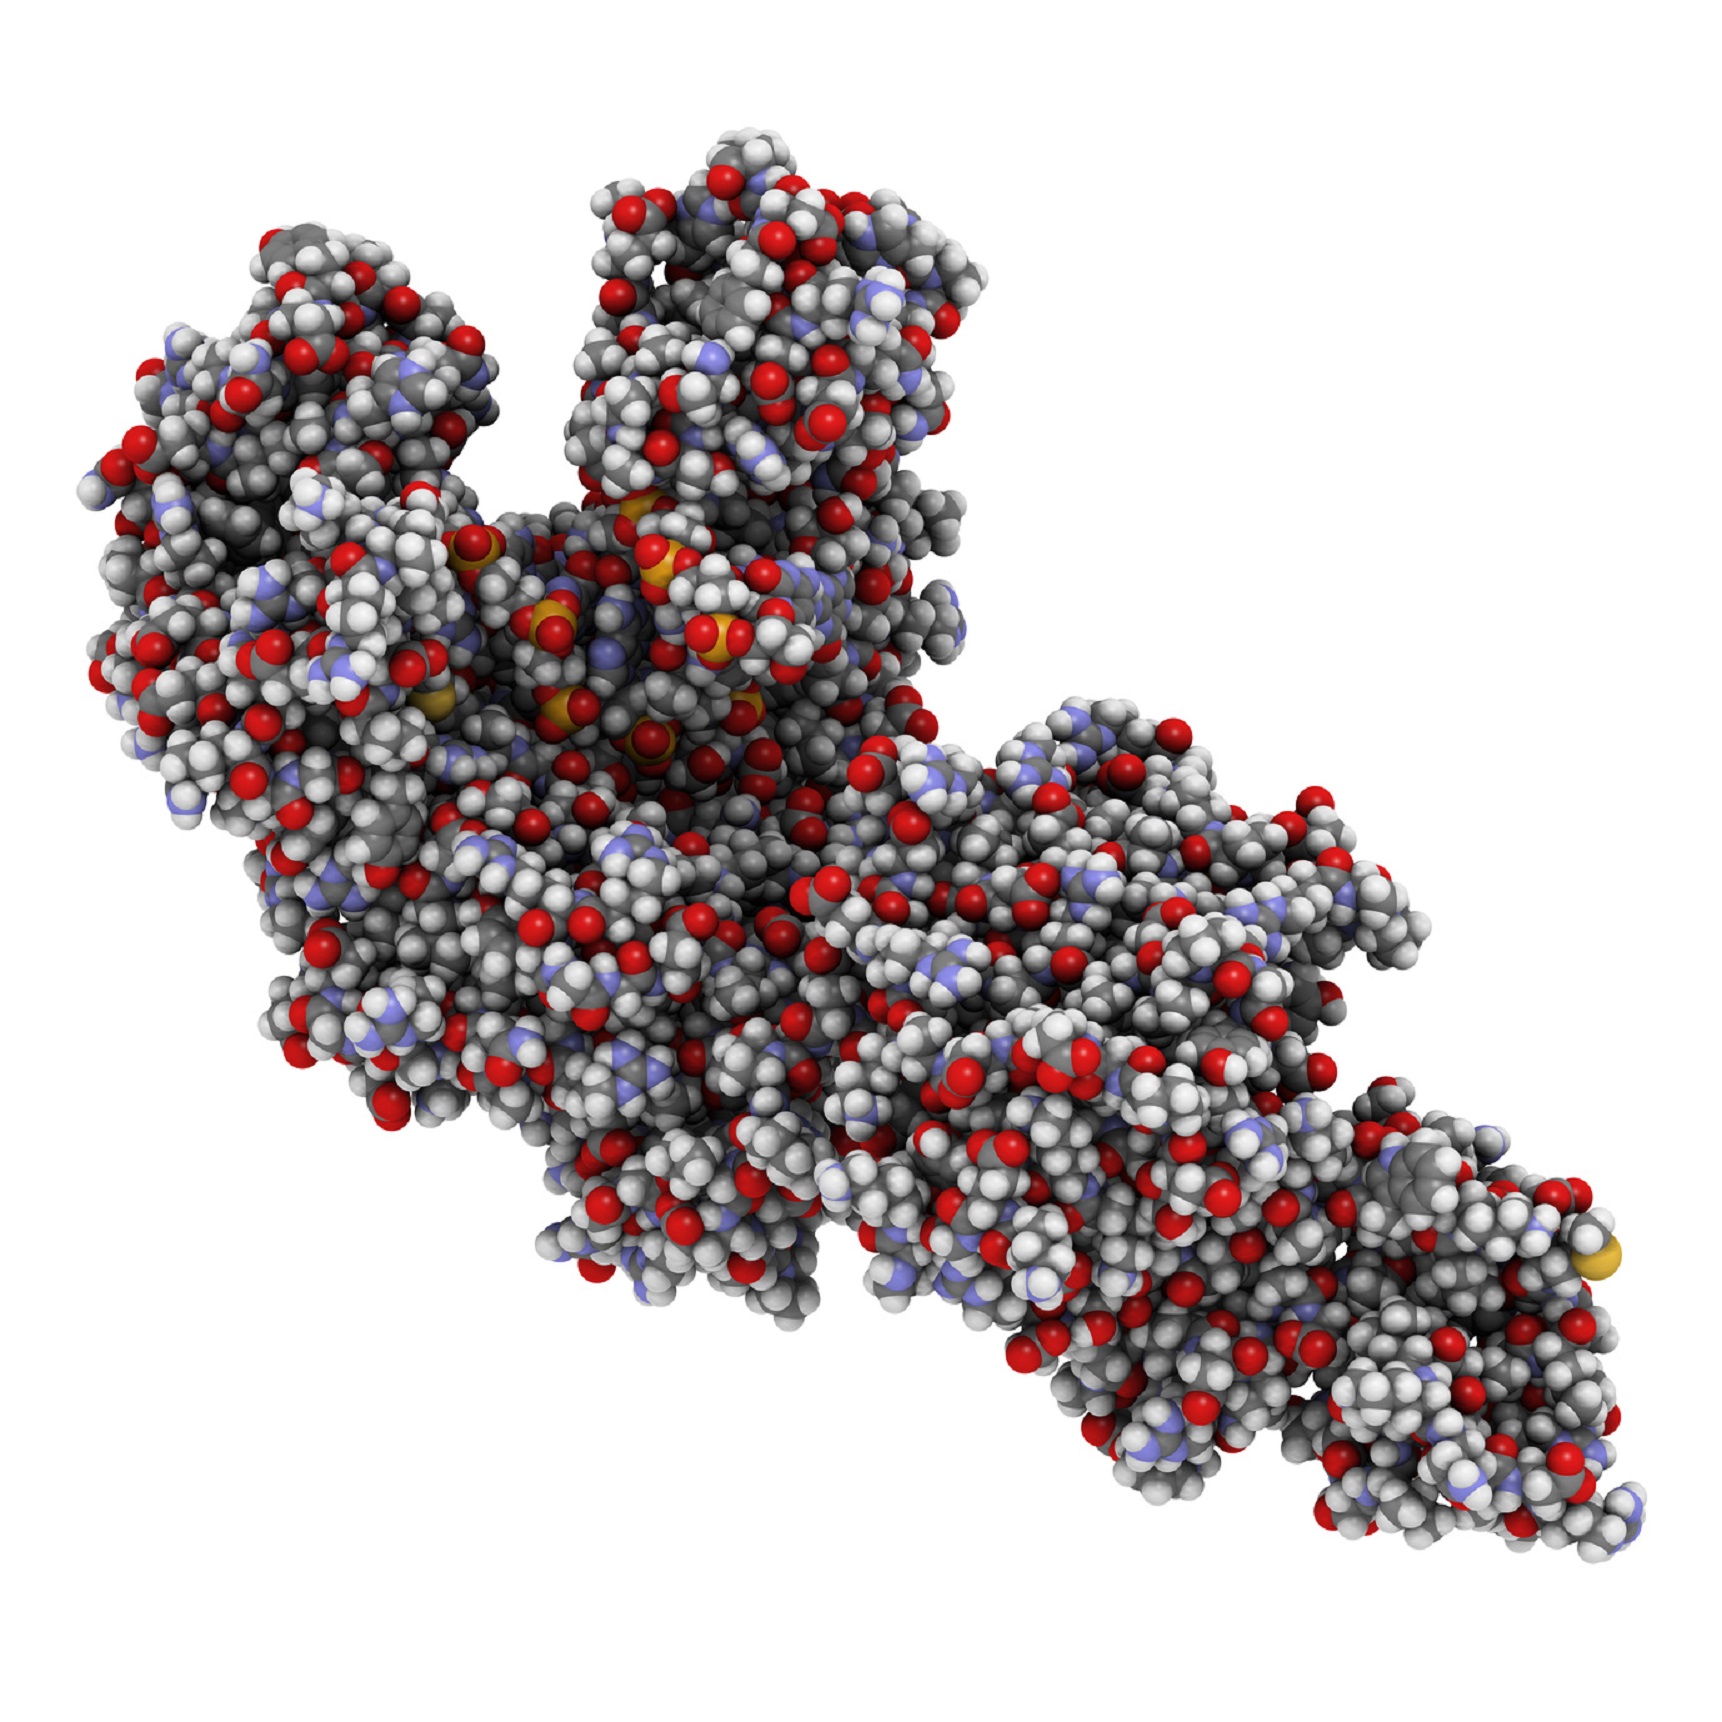 La Taq polymérase est une enzyme extraite de la bactérie Thermus aquaticus. © molekuul.be, Fotolia